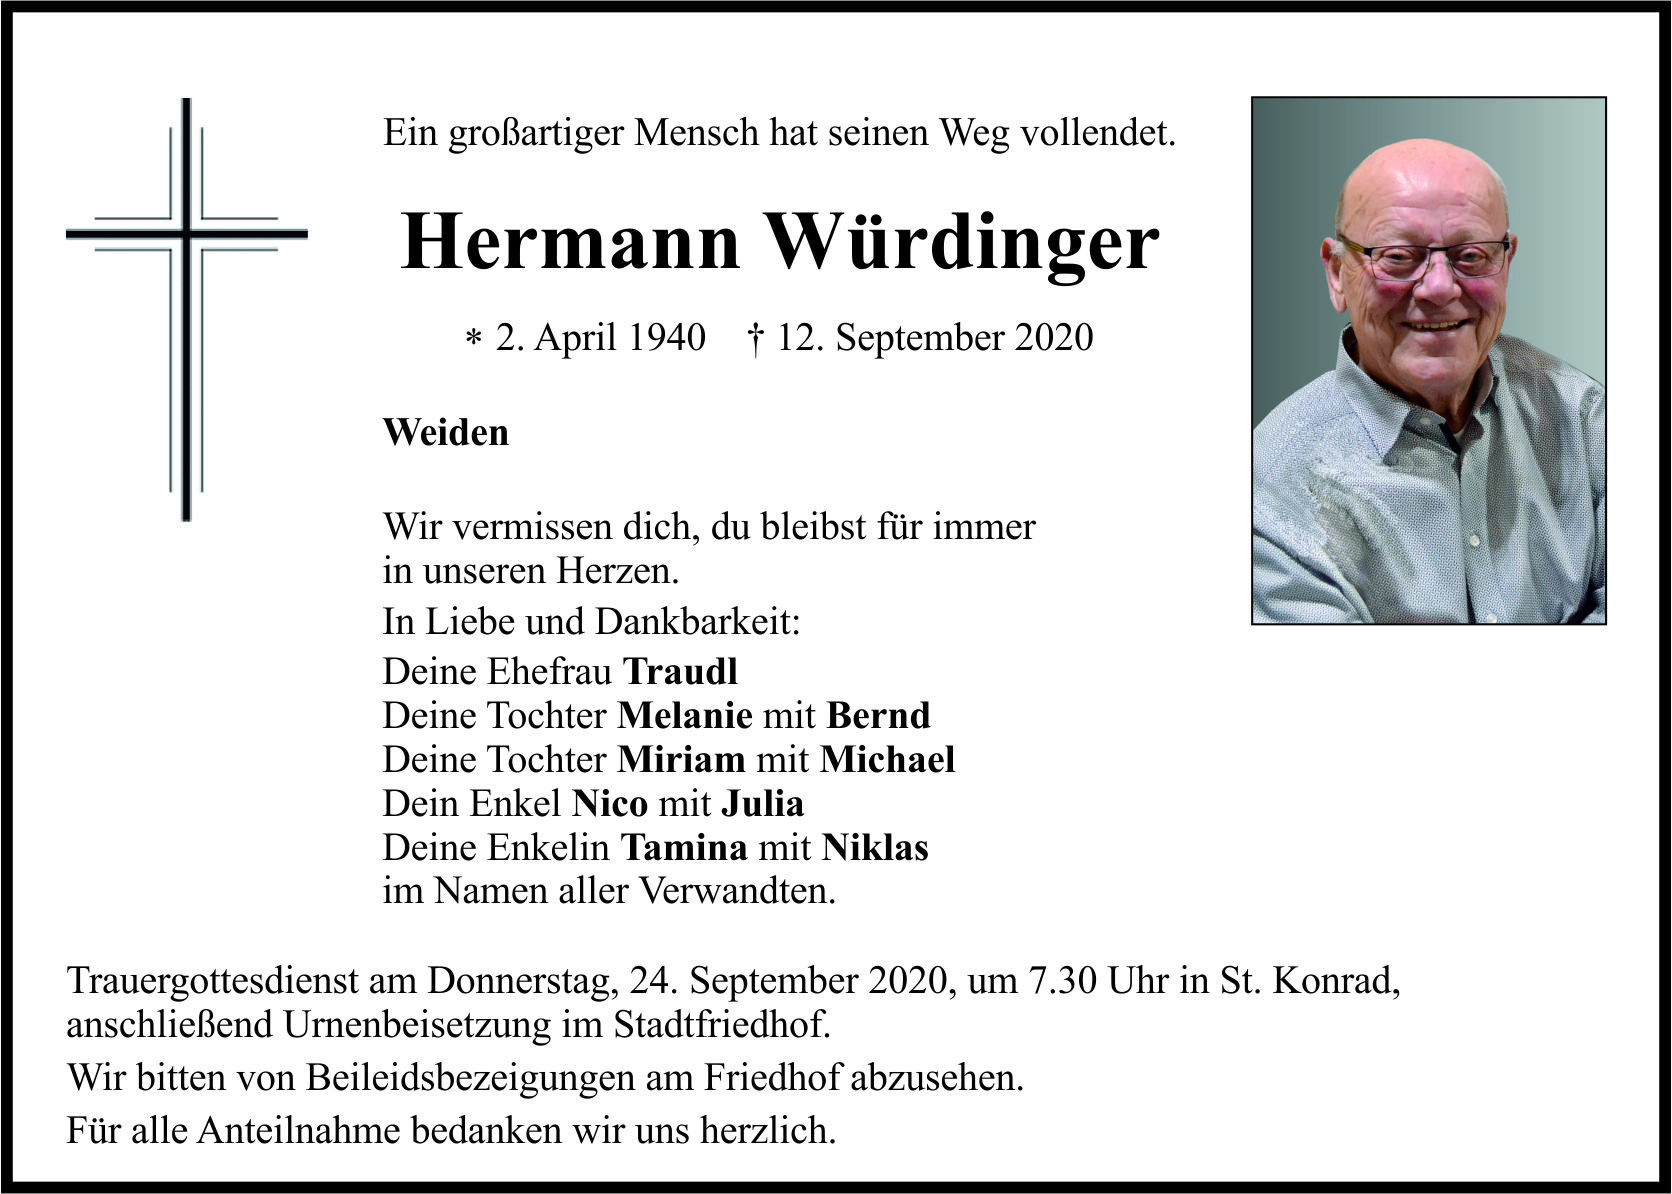 Traueranzeige Hermann Würdinger, Weiden